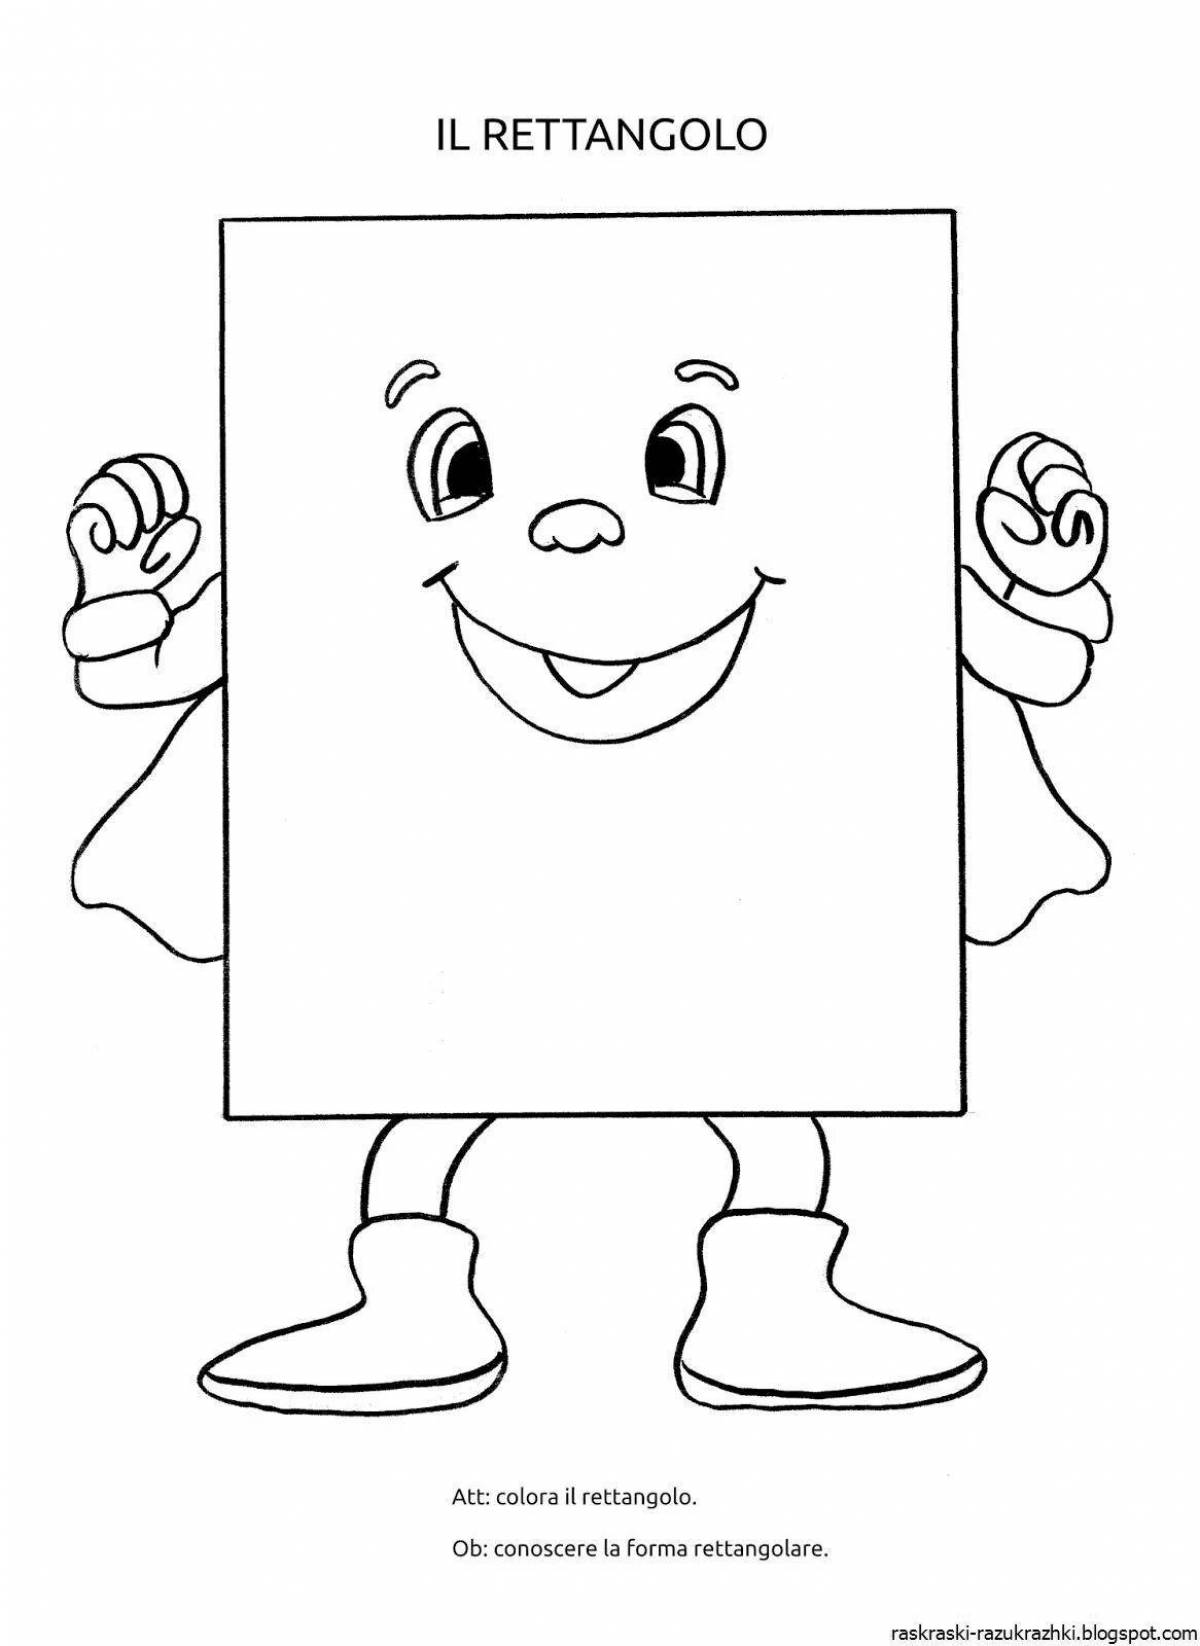 Children's rectangle #4